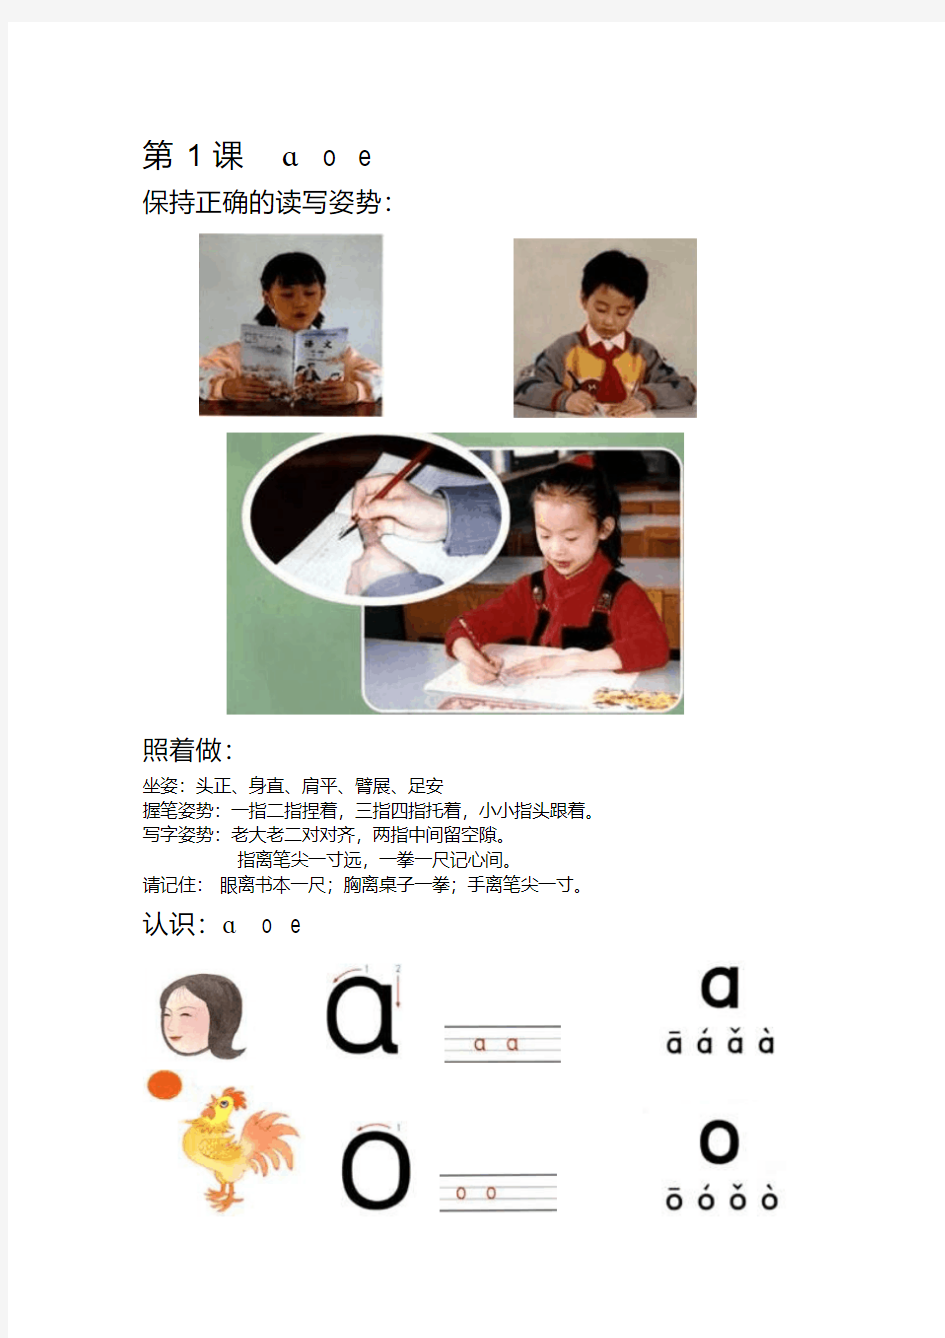 完整汉语拼音教材32页彩图版